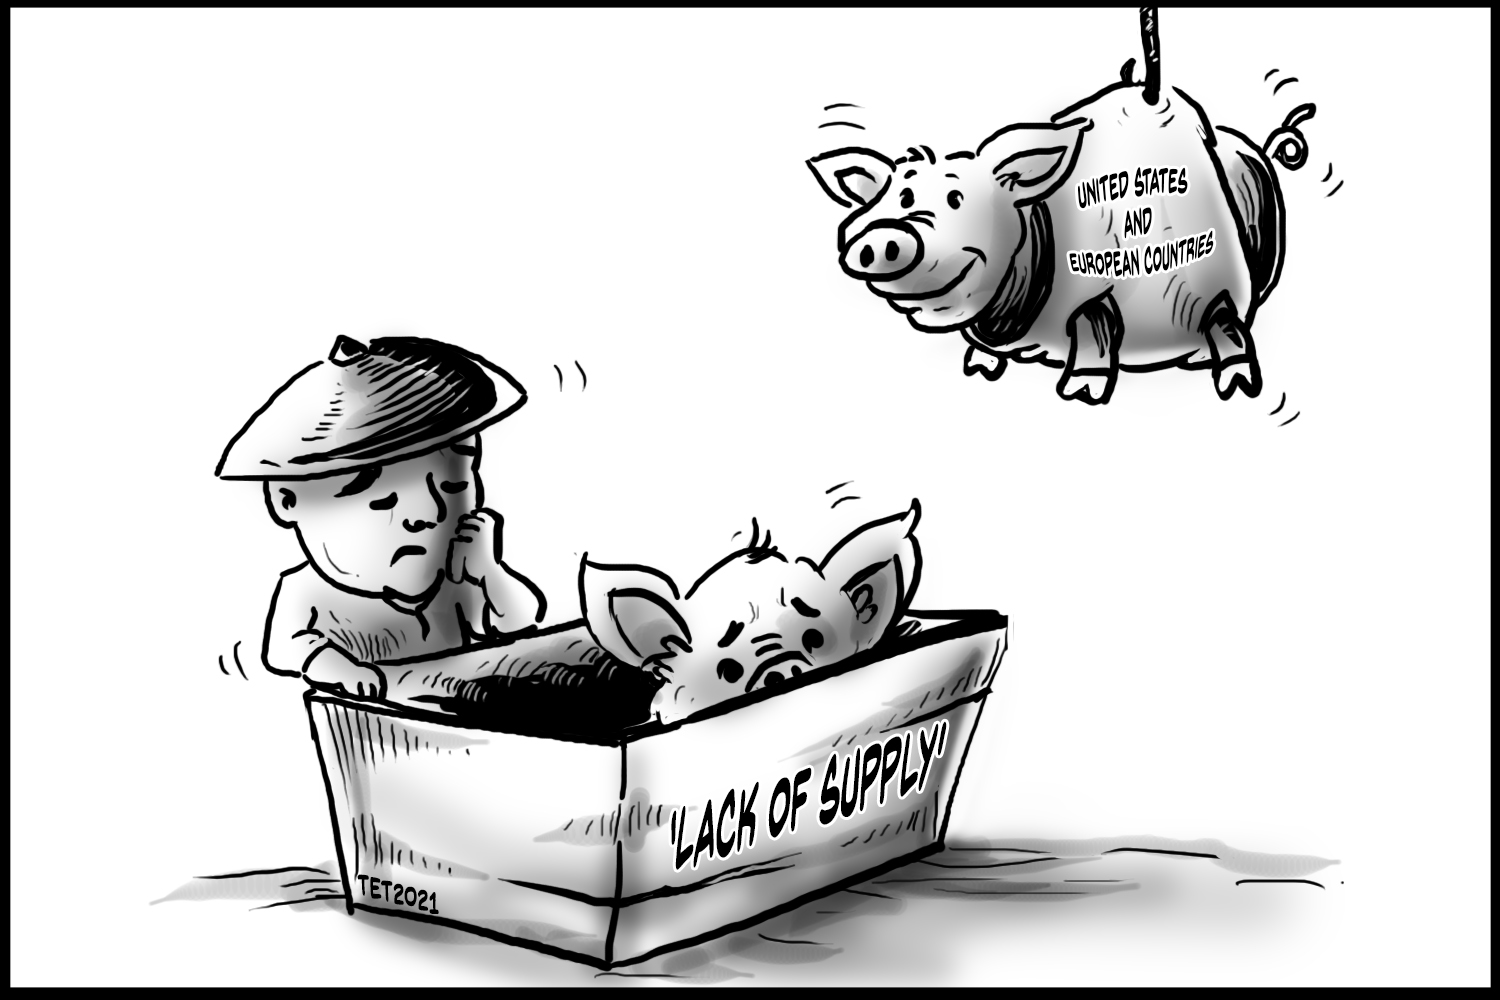 editorial cartooning about pork barrel